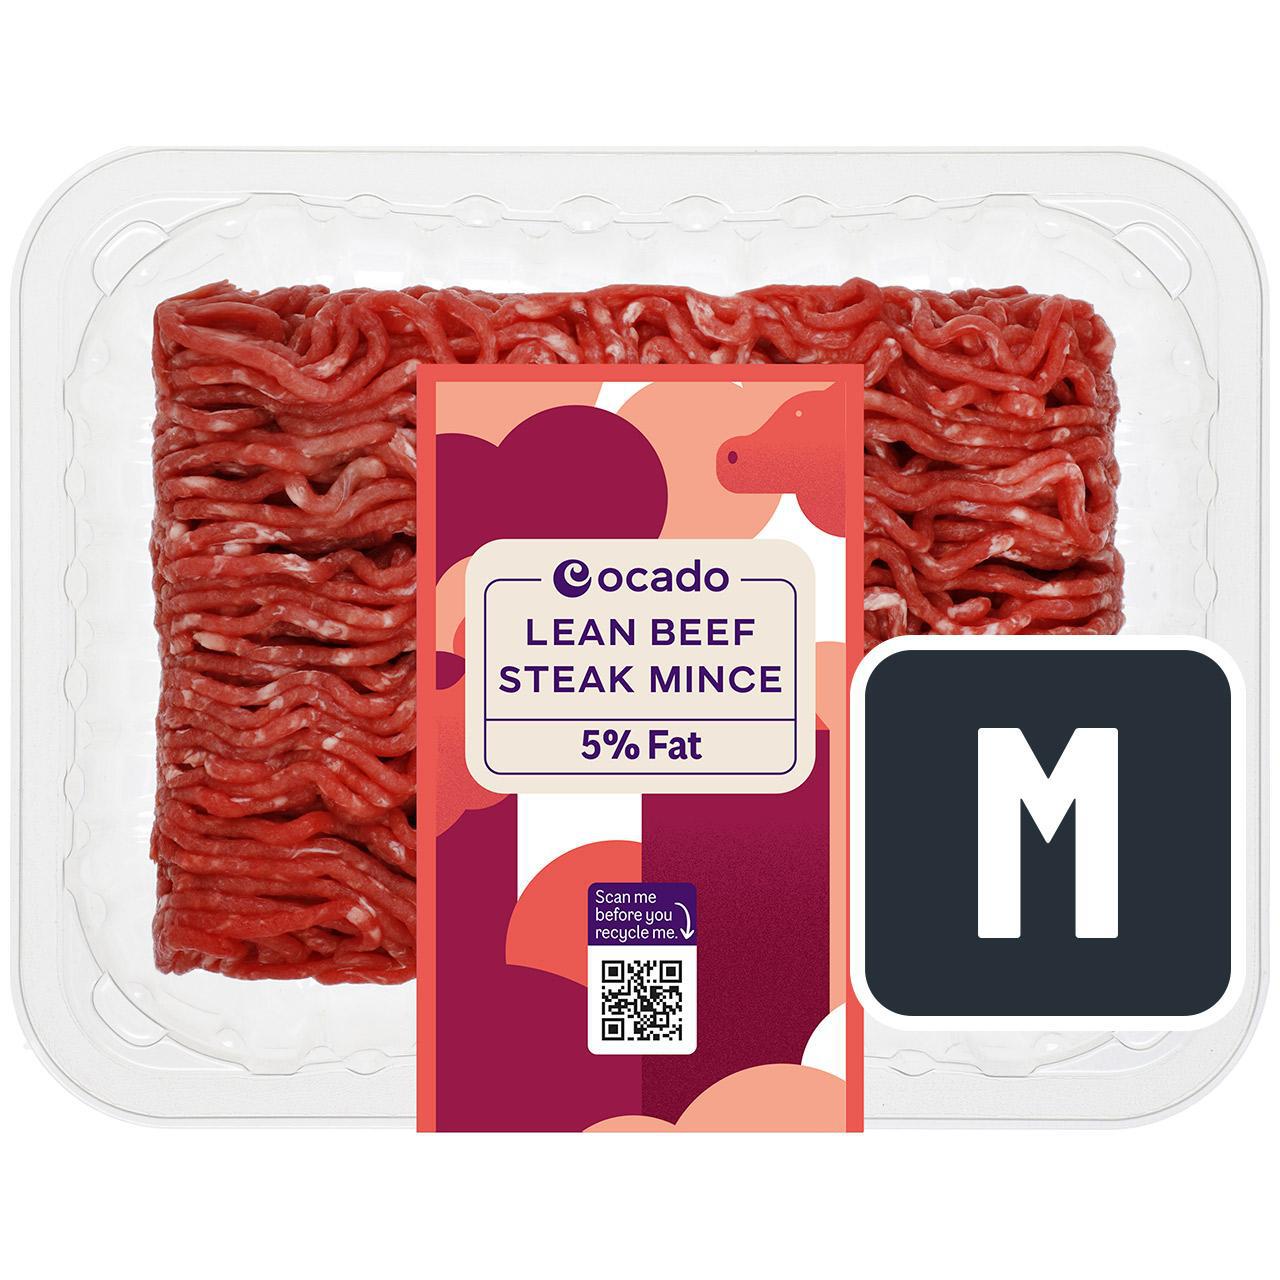 Ocado Lean Beef Steak Mince 5% Fat 500g